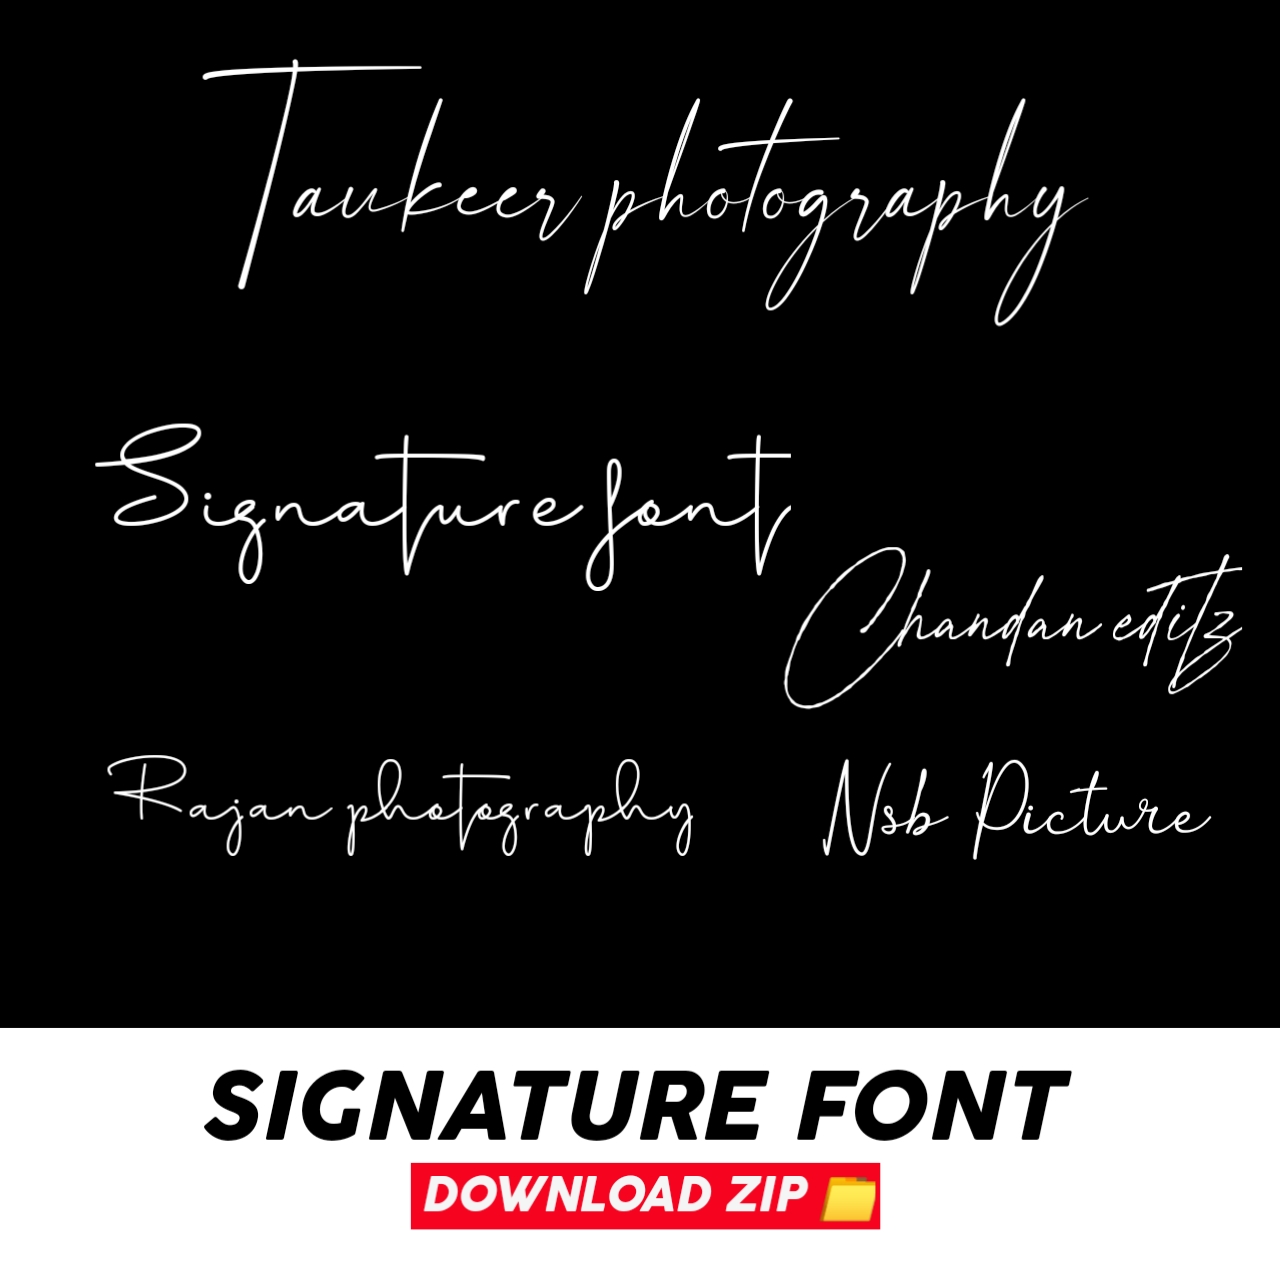 Signature fonts download